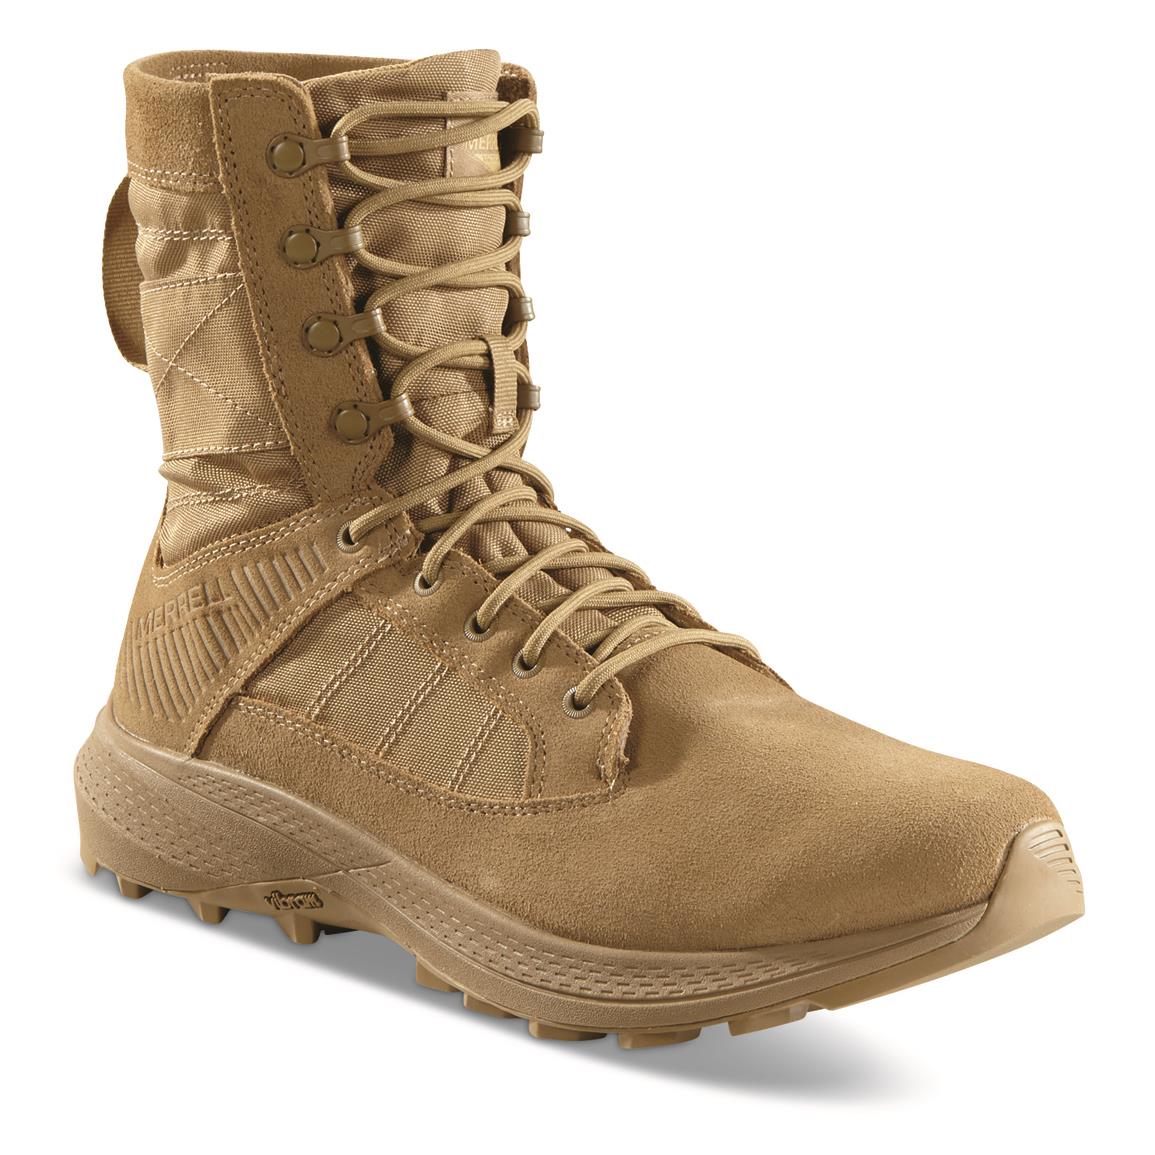 Merrell Men's Tactical MQC Force Tactical Boots, AR670-1 Compliant, Dark Coyote